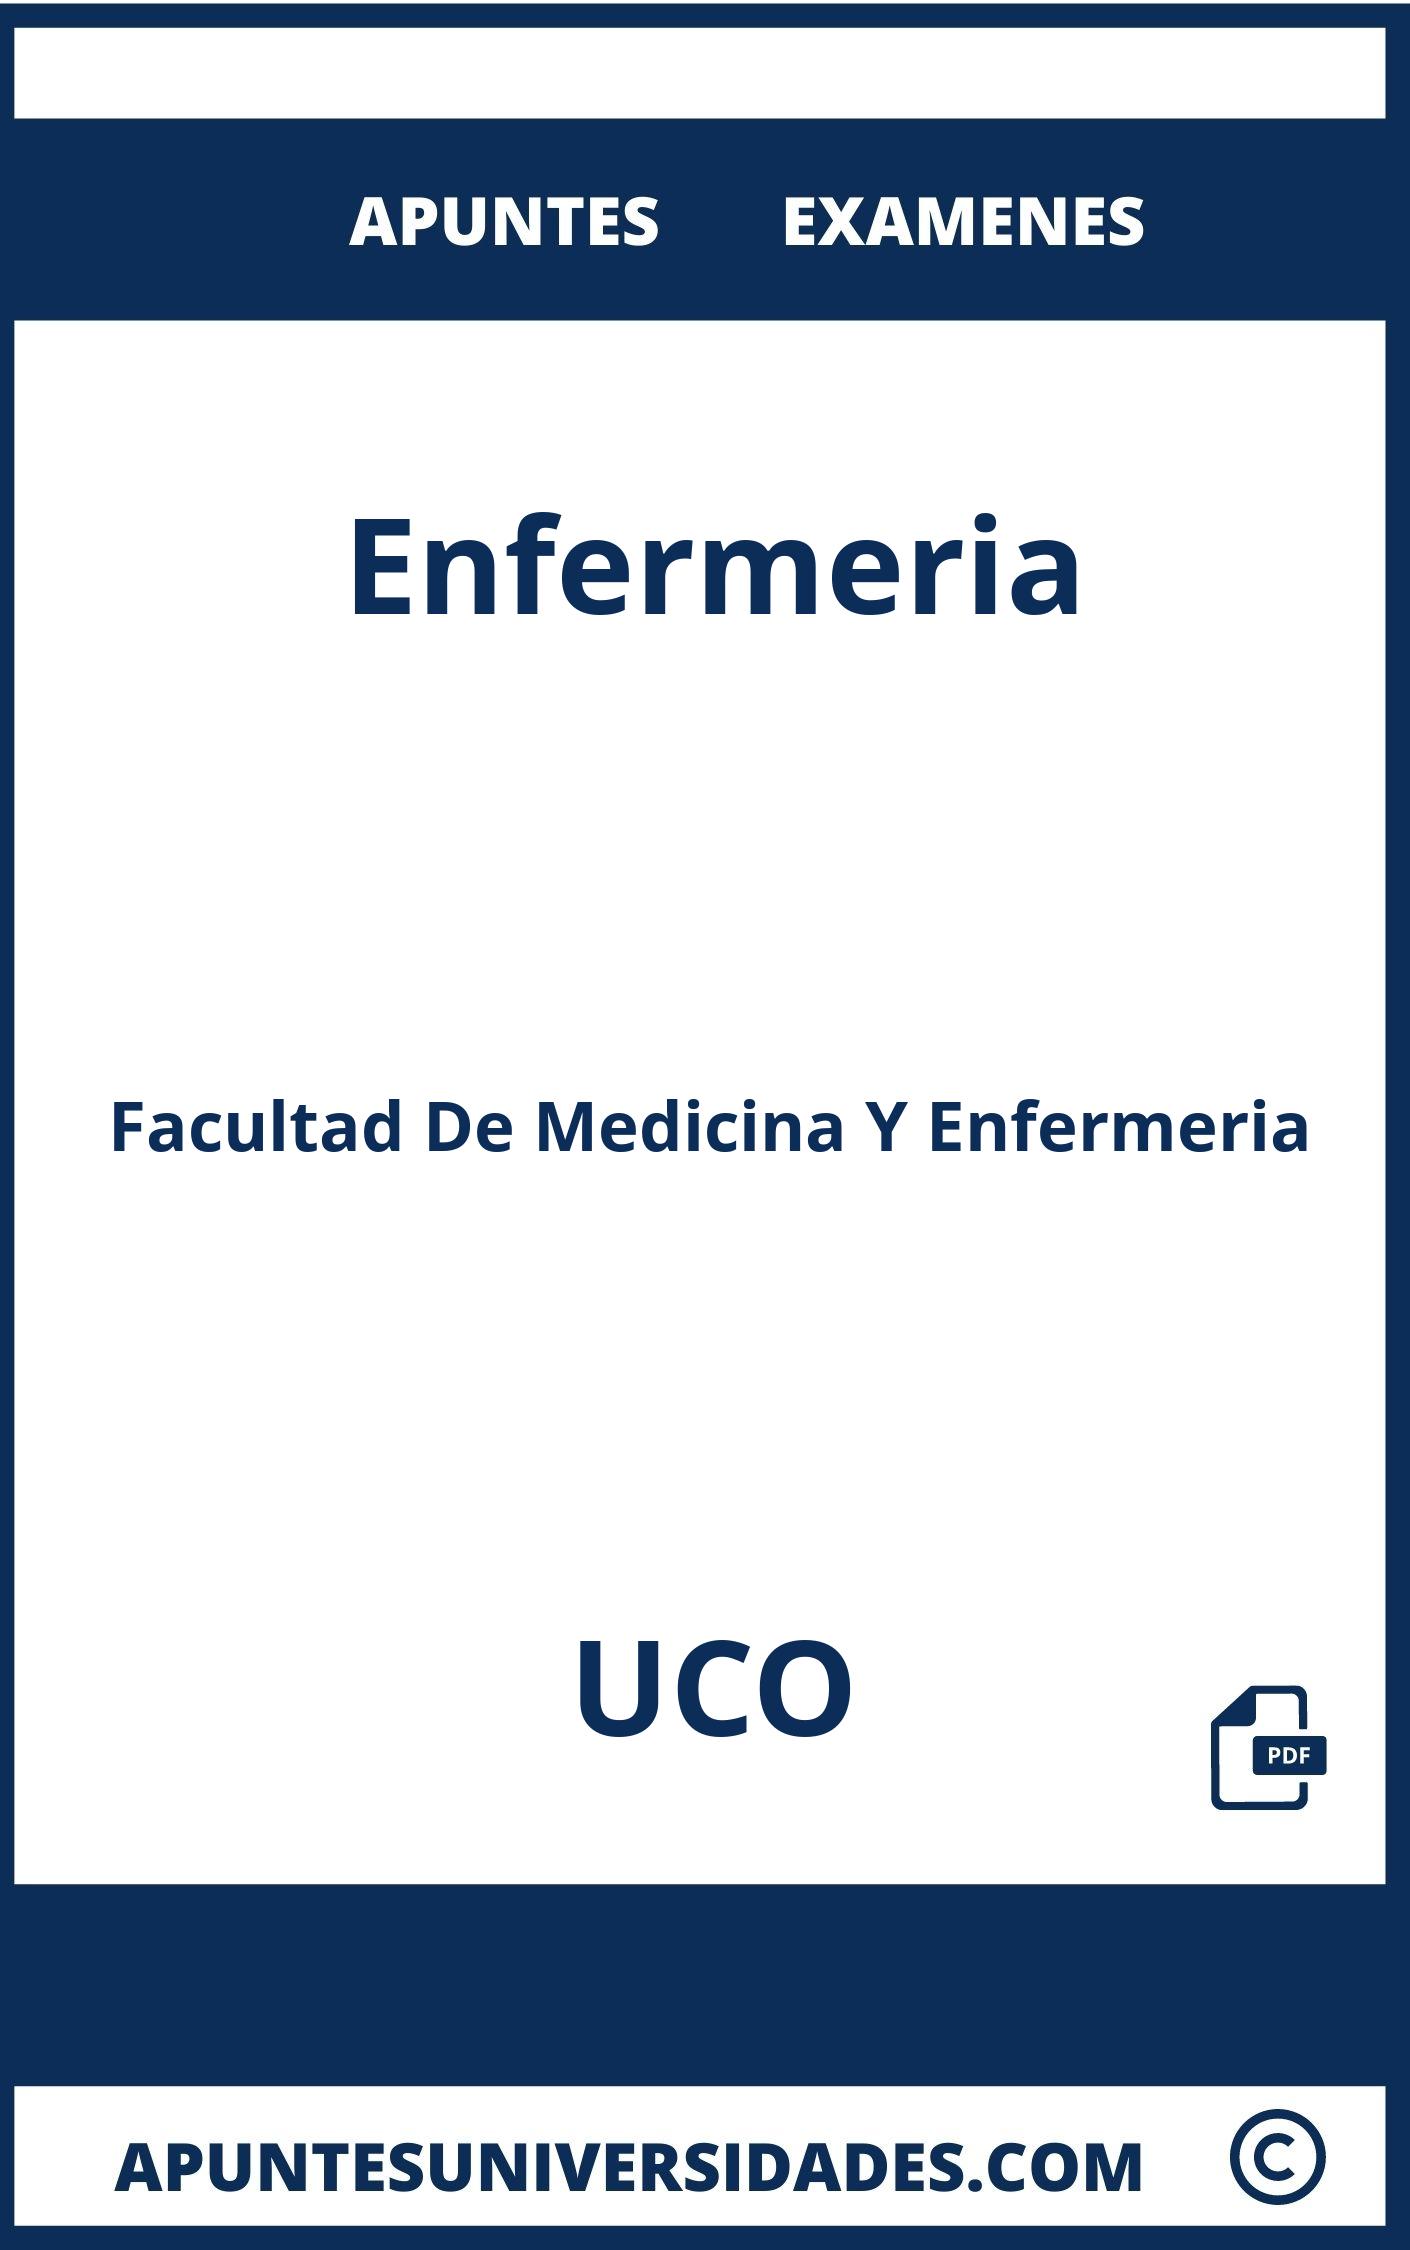 Apuntes y Examenes de Enfermeria UCO